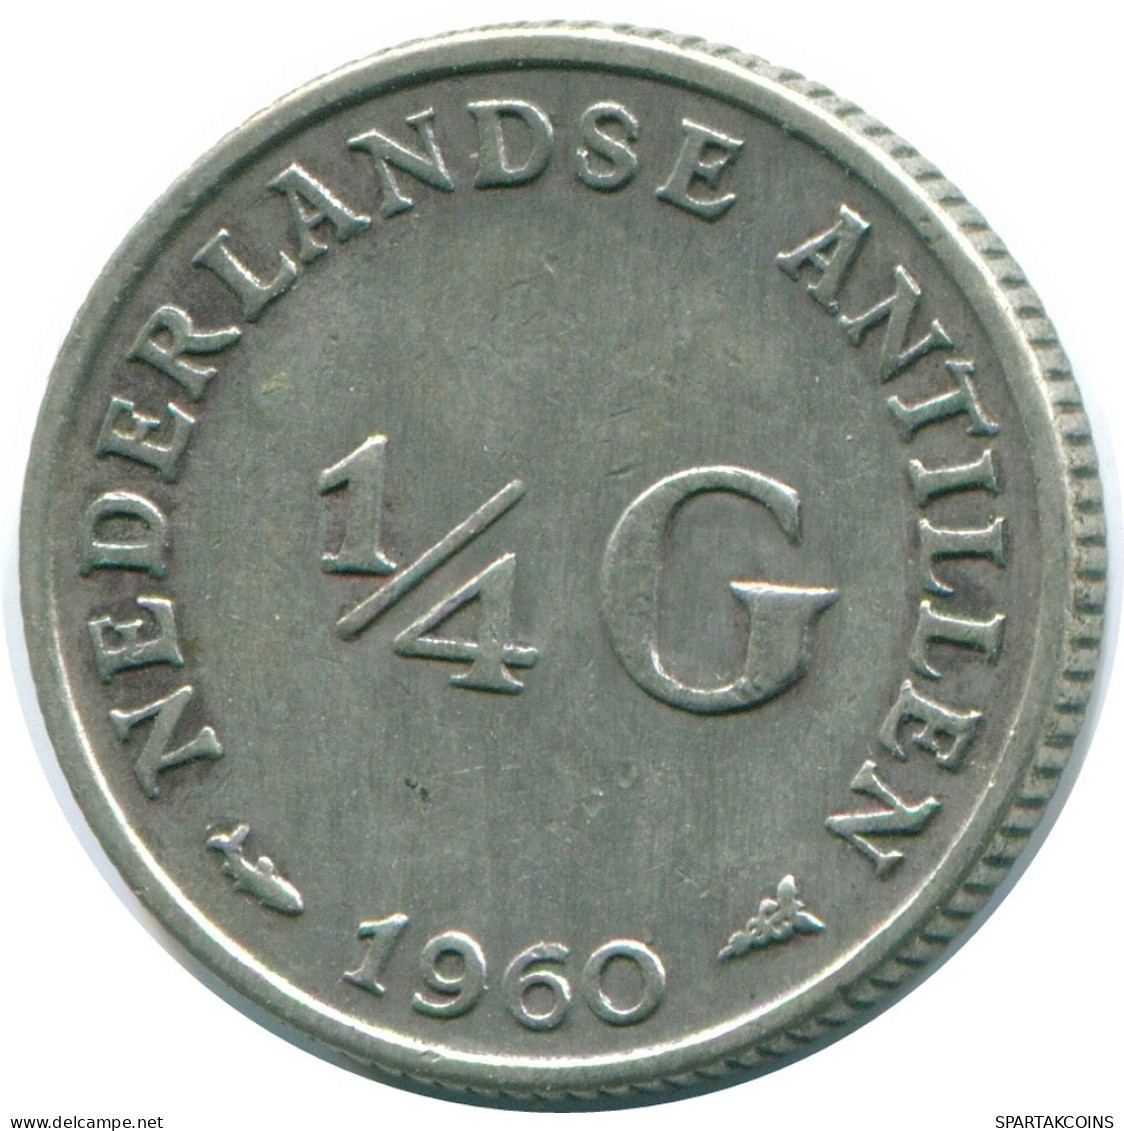 1/4 GULDEN 1960 NIEDERLÄNDISCHE ANTILLEN SILBER Koloniale Münze #NL11084.4.D.A - Antilles Néerlandaises